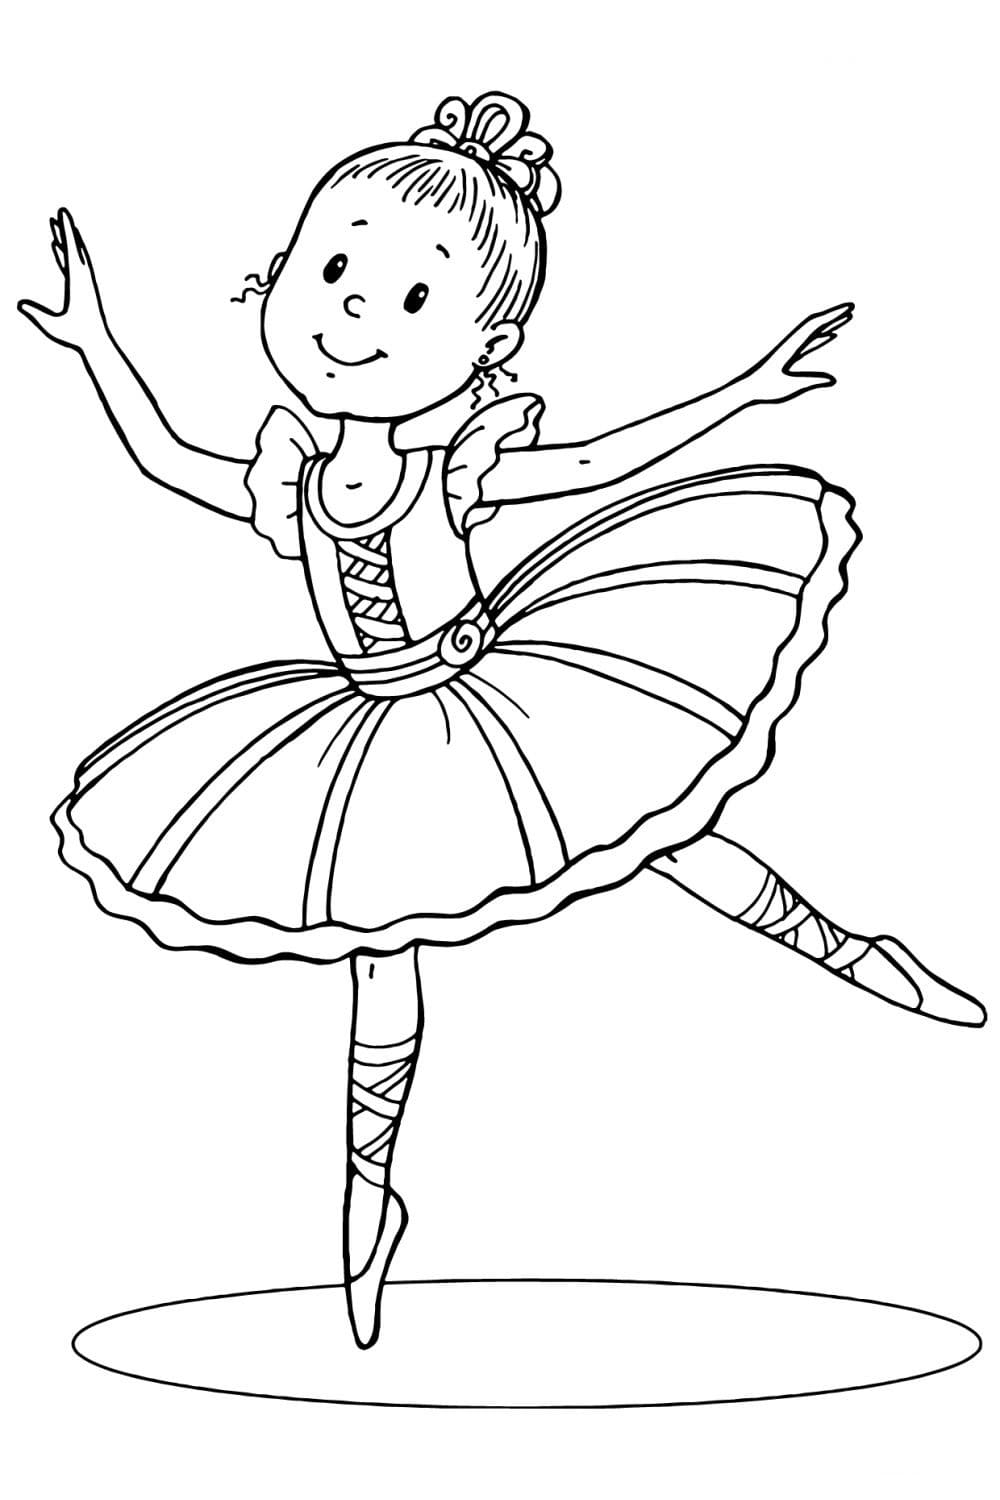 Dibujos para colorear Bailarina. Descargar o imprimir gratis